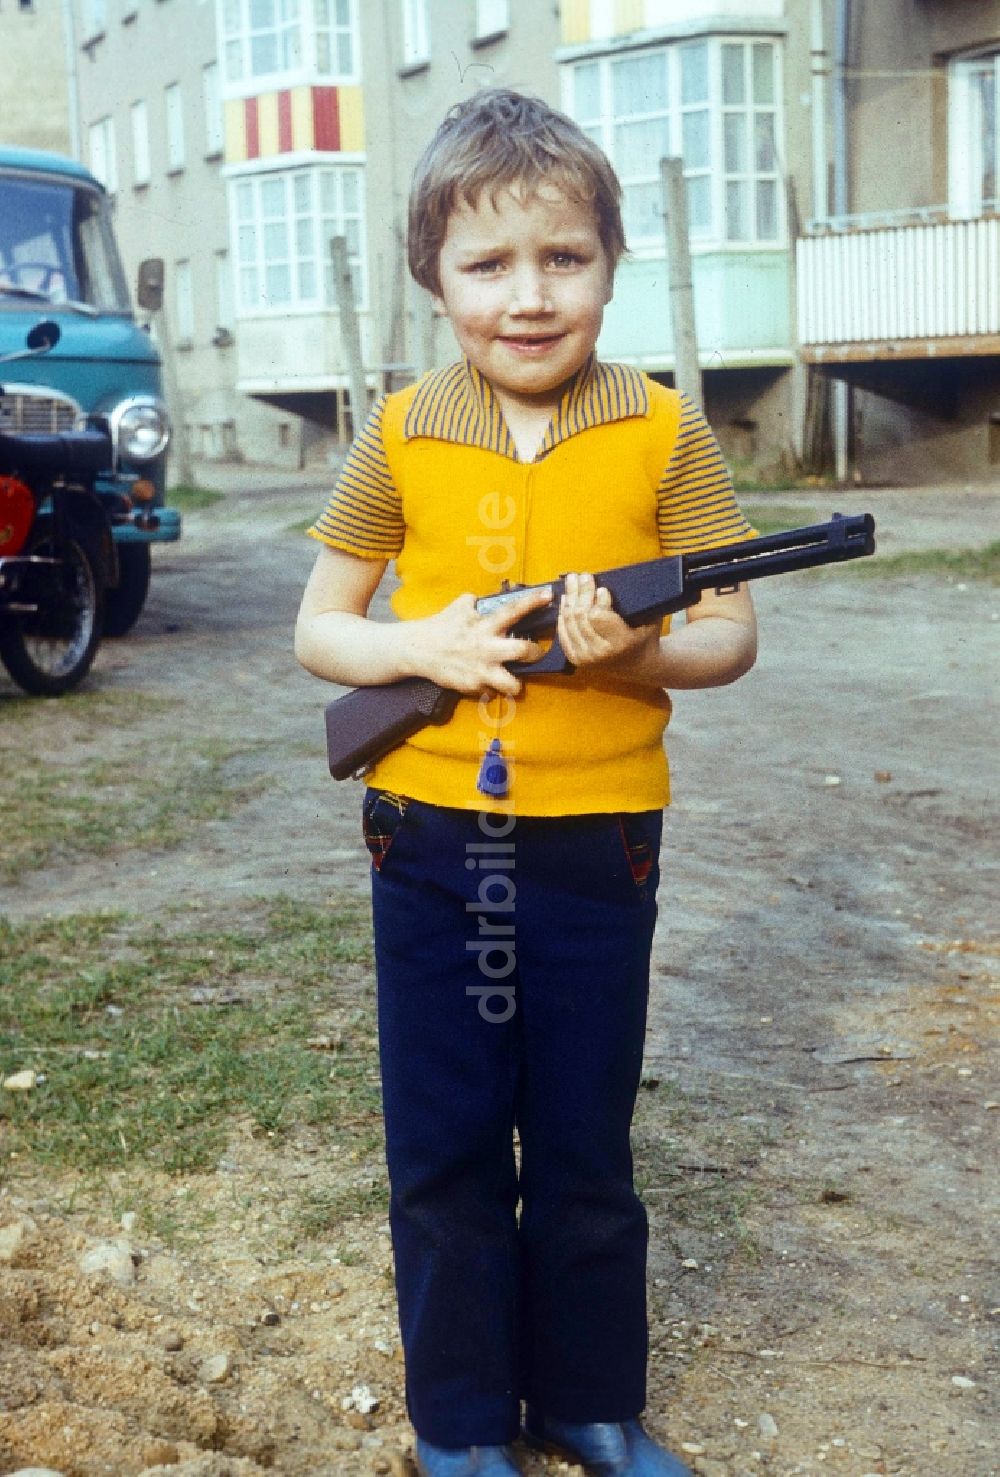 DDR-Fotoarchiv: Neustrelitz - Junge mit einem Spielzeug Gewehr in Neustrelitz in Mecklenburg-Vorpommern in der DDR